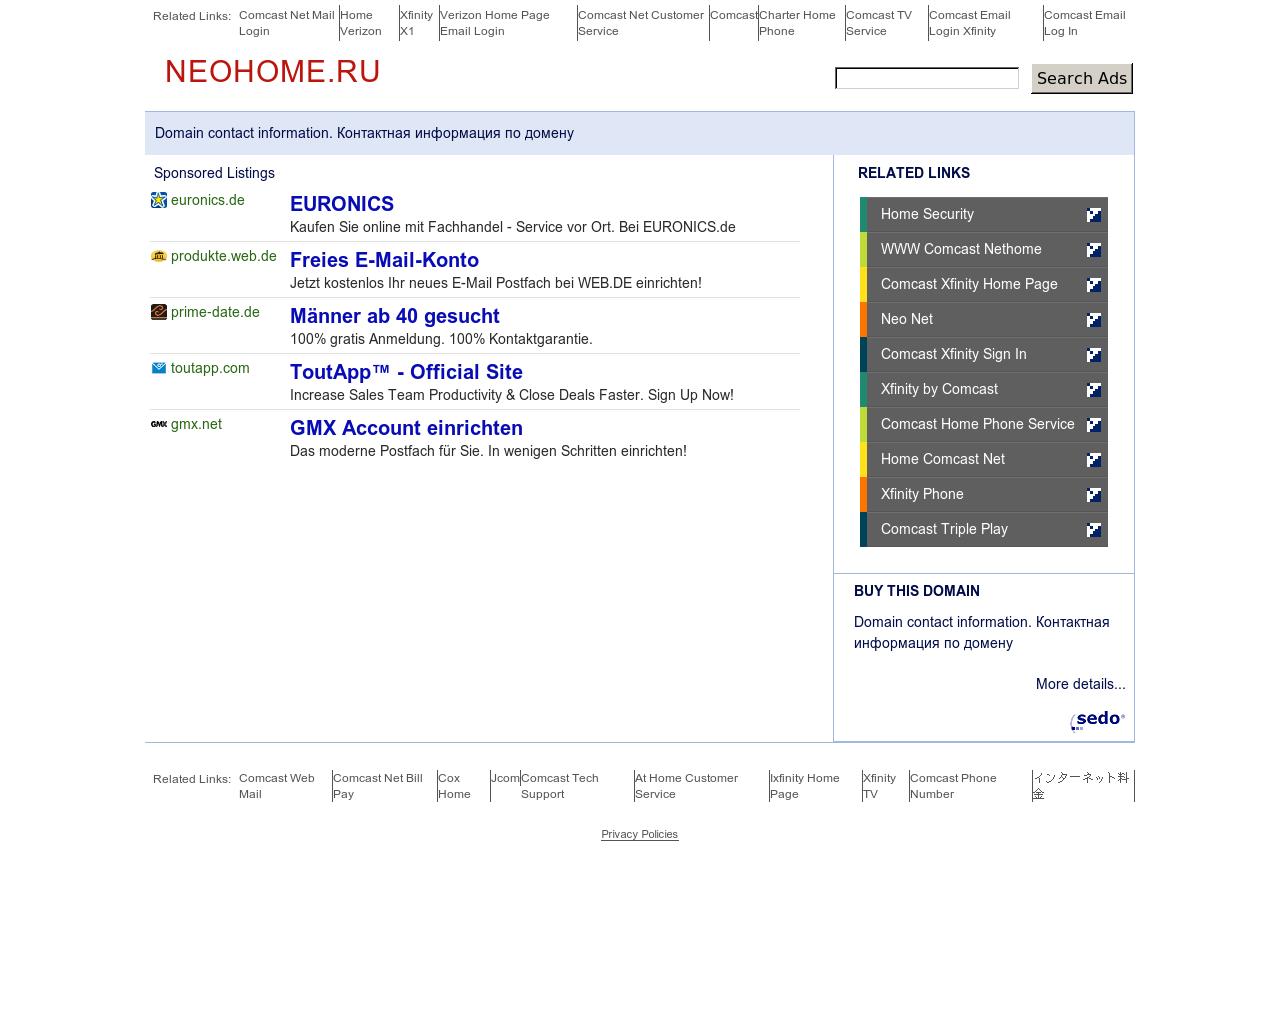 Изображение сайта neohome.ru в разрешении 1280x1024